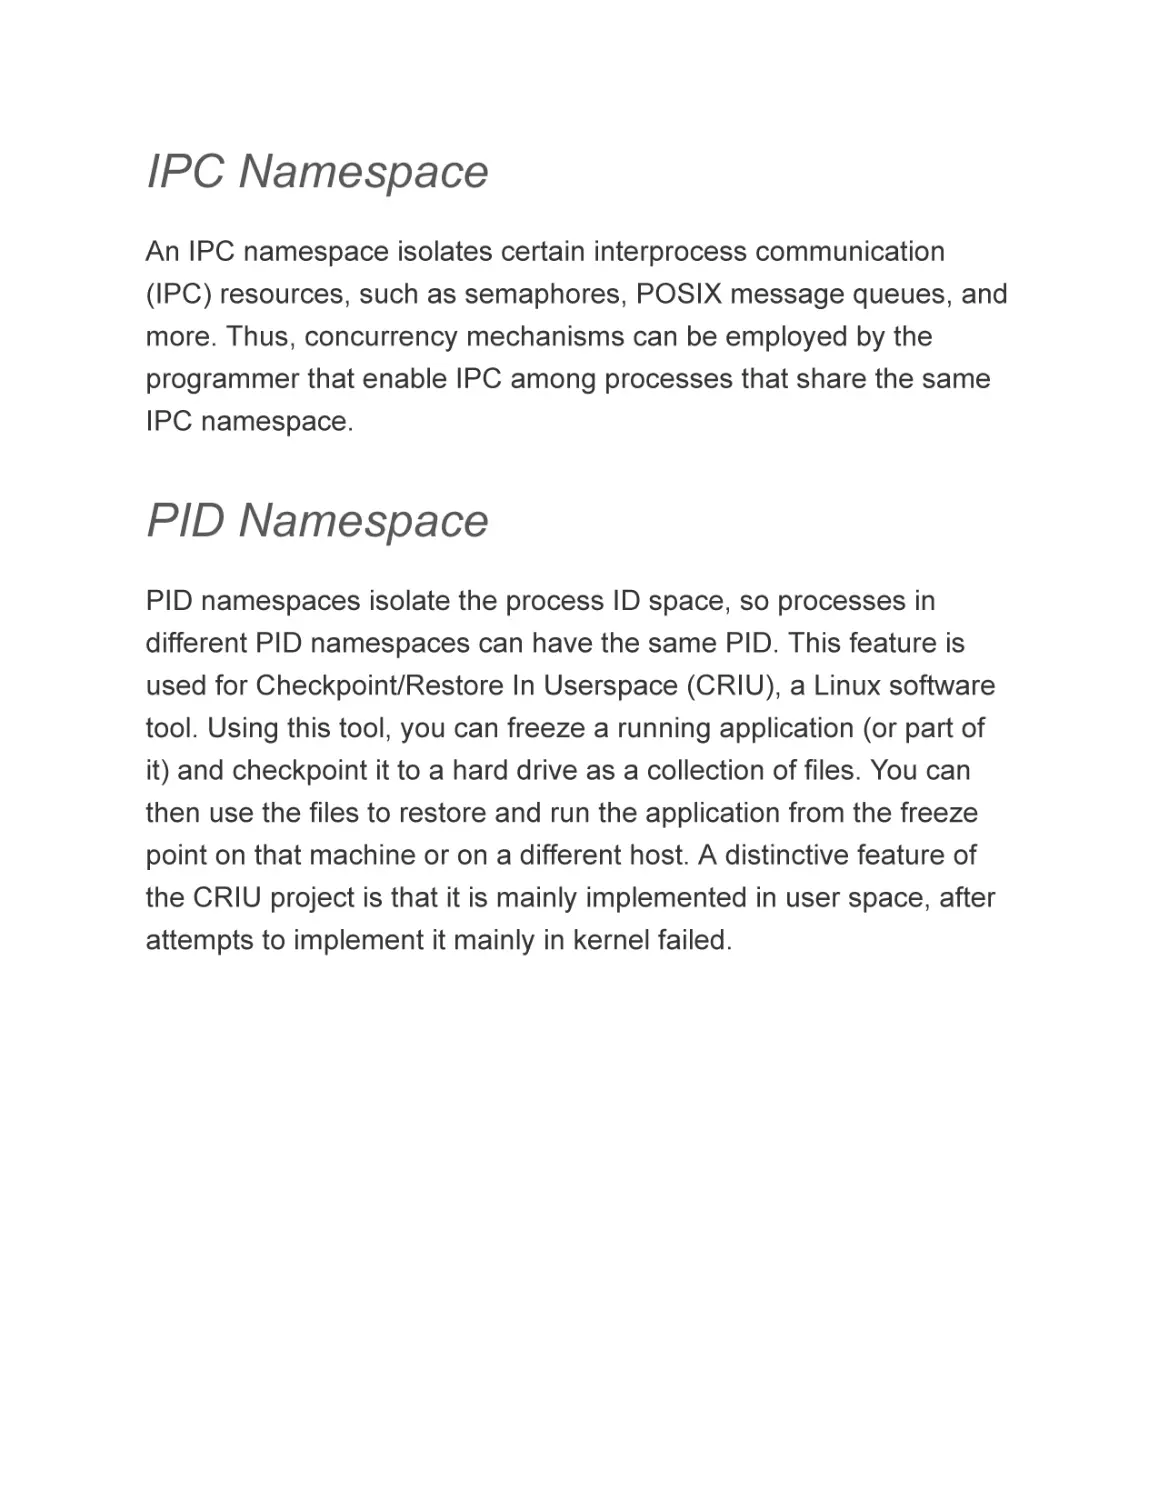 IPC Namespace
PID Namespace